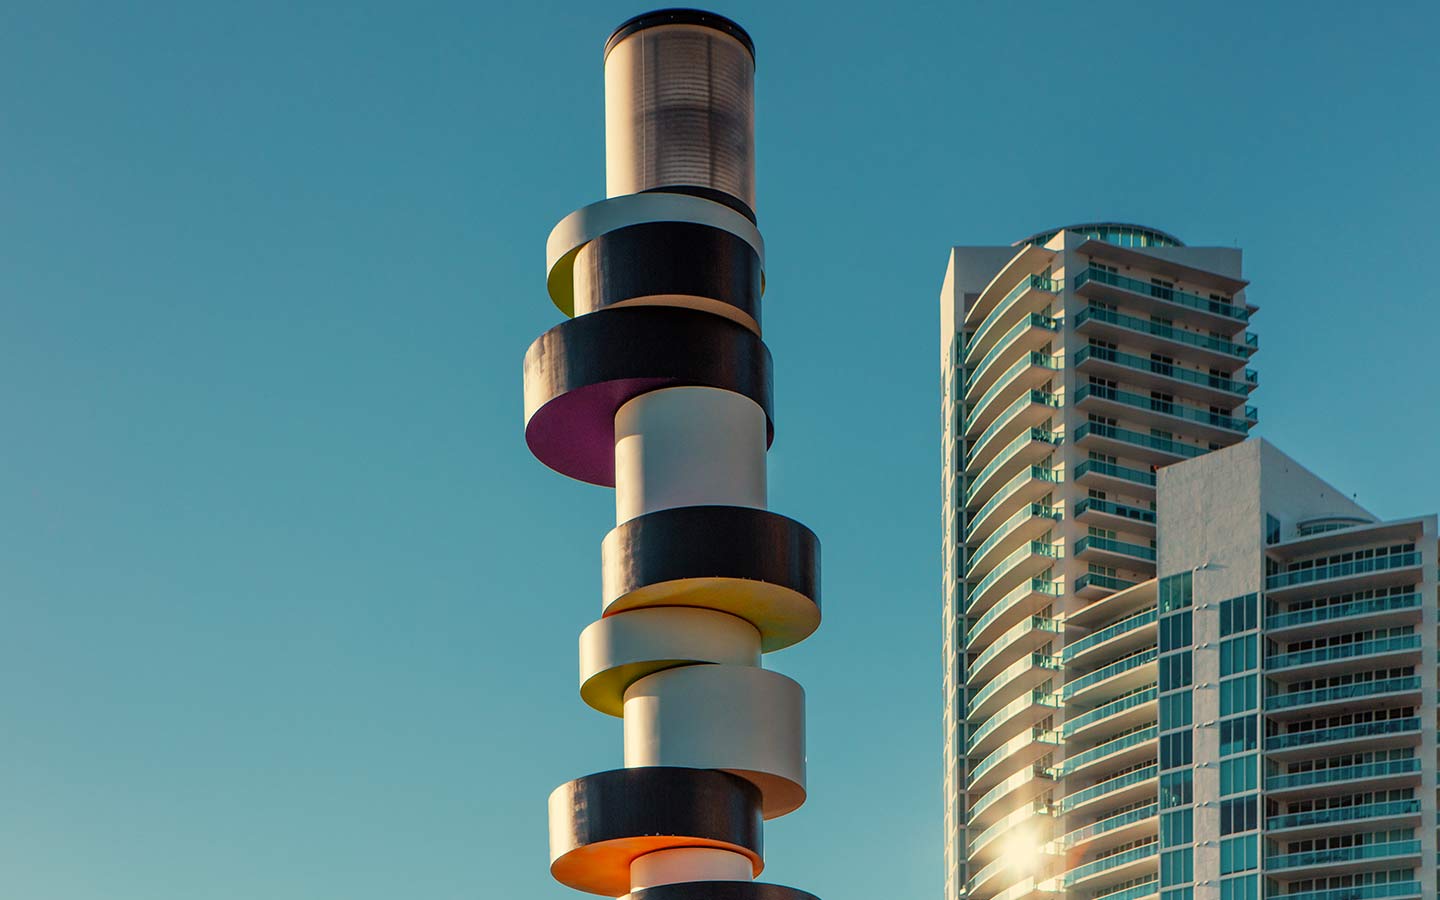 Eigensinnige Leuchtturm-Skulptur von Tobias Rehberger an South Pointe Park